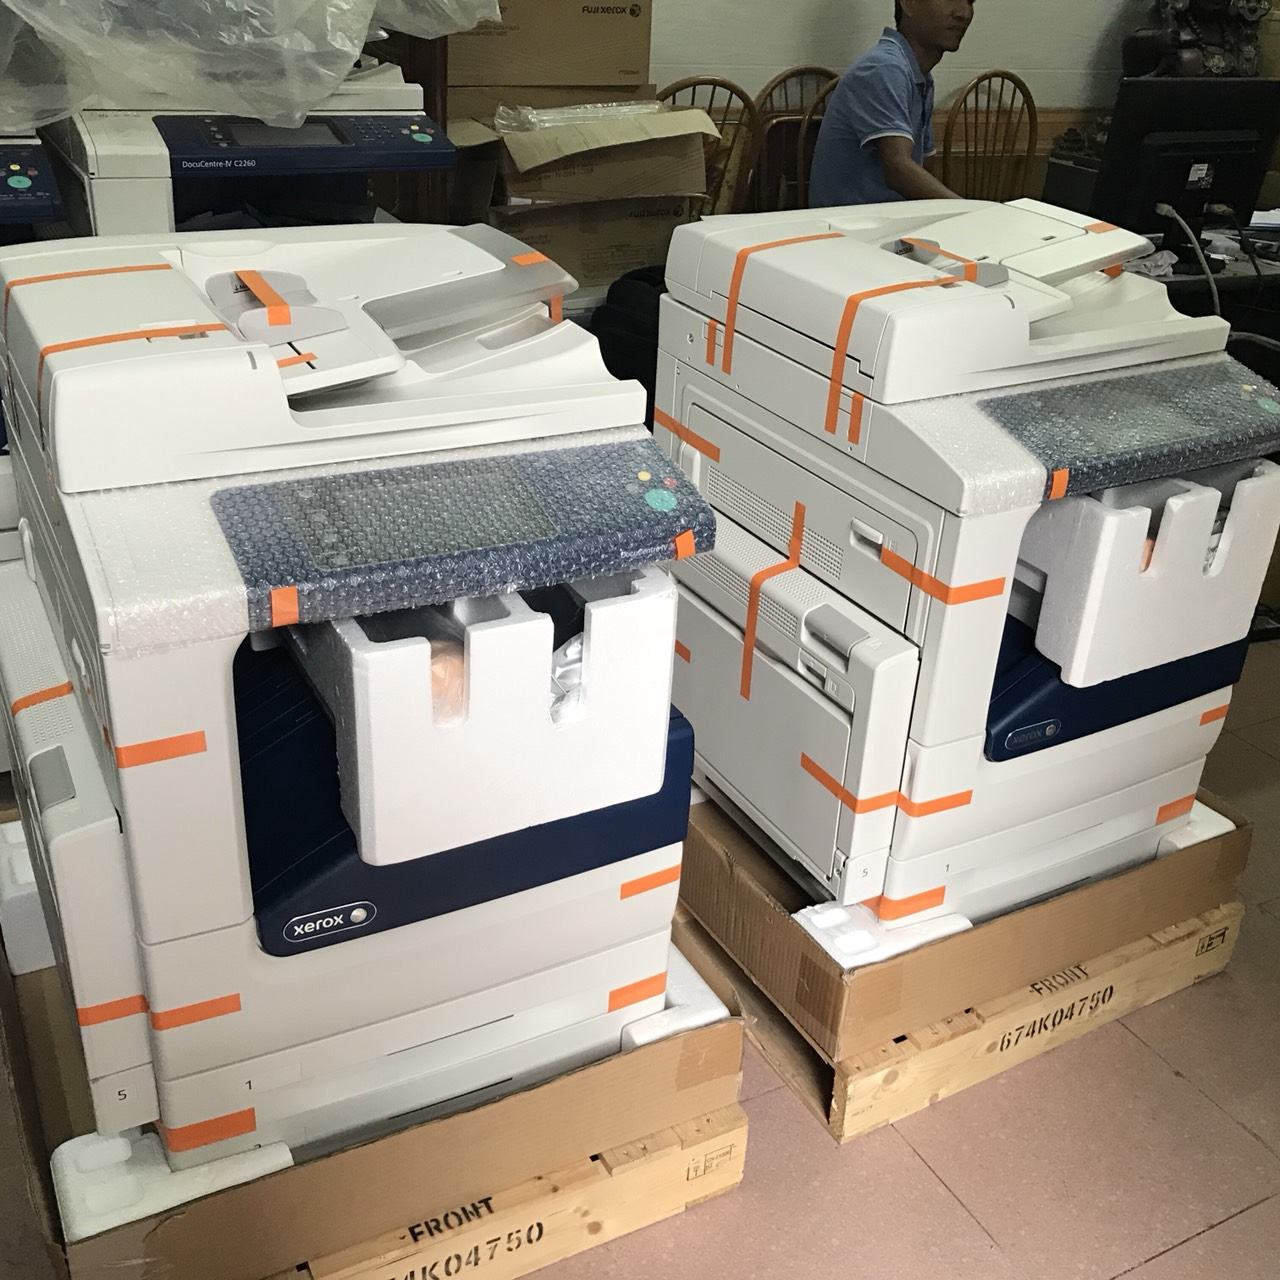 Cho thuê máy photocopy giá rẻ uy tín tại Hà Nội